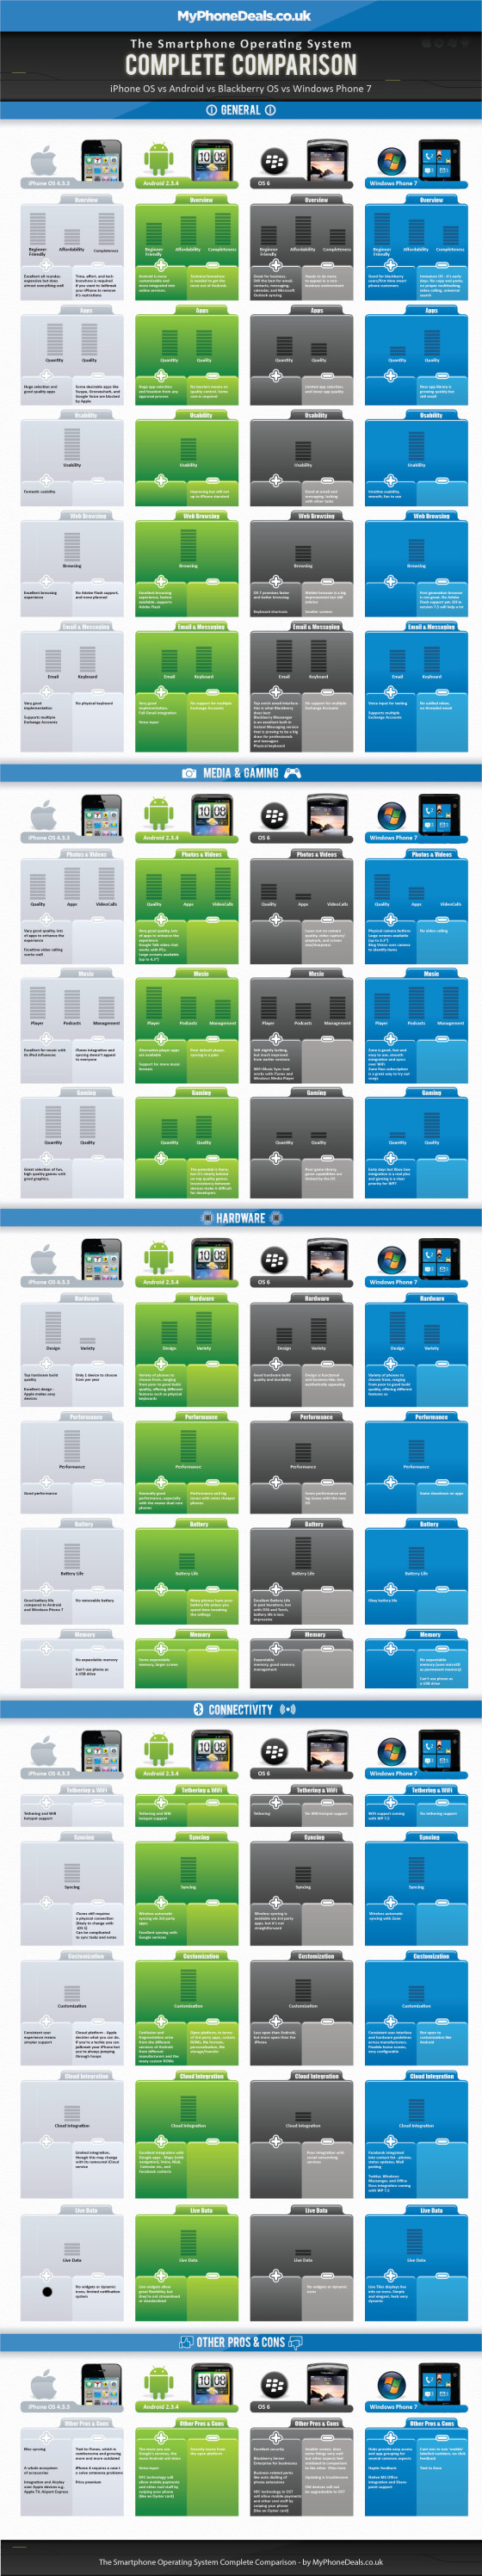 Sistemi Operativi per smartphone - Comparazione